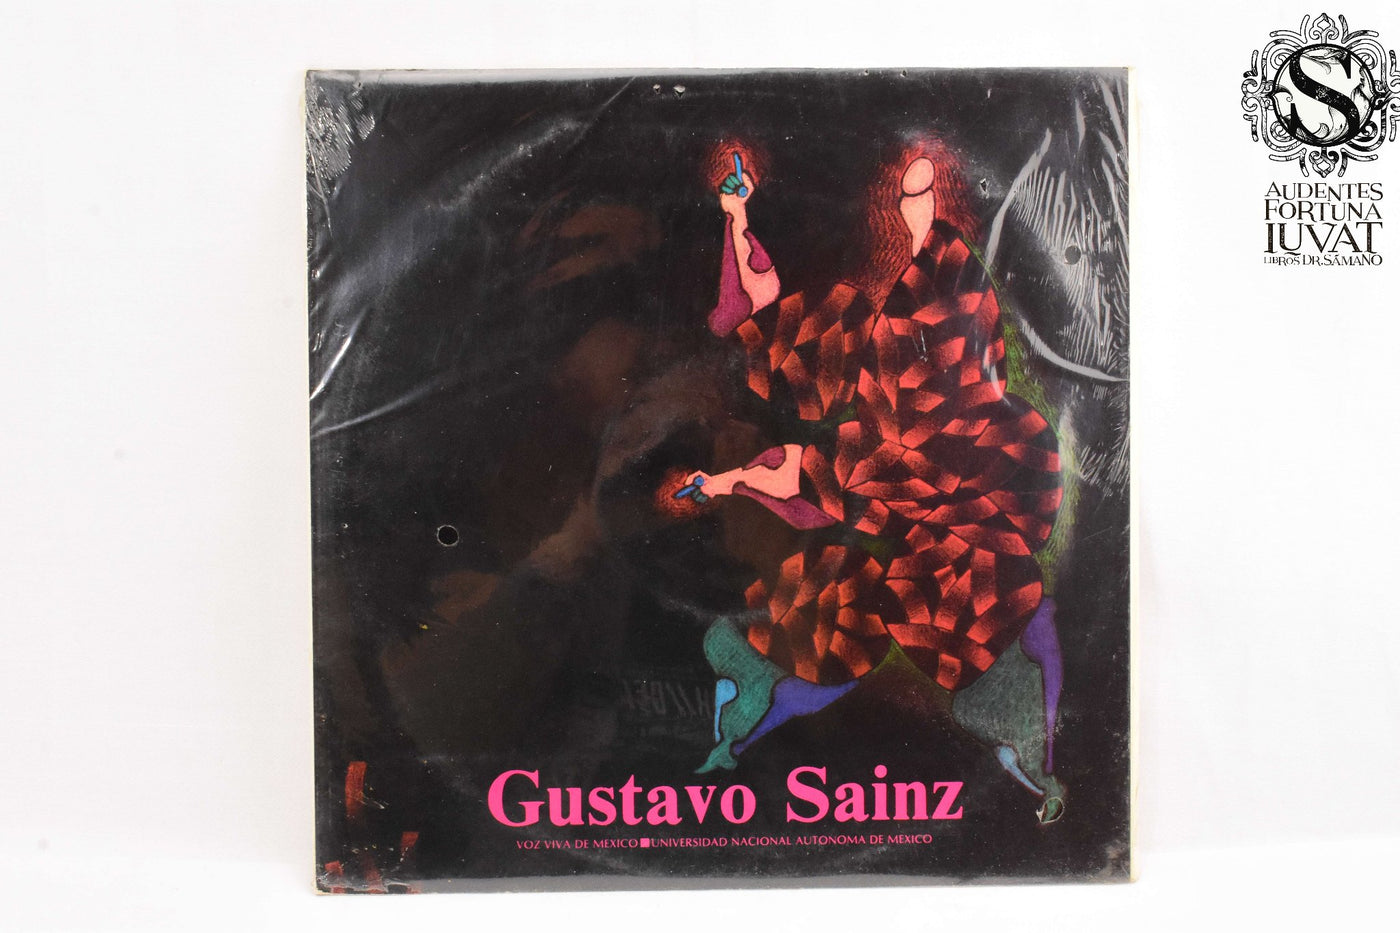 GUSTAVO SAINZ - LP